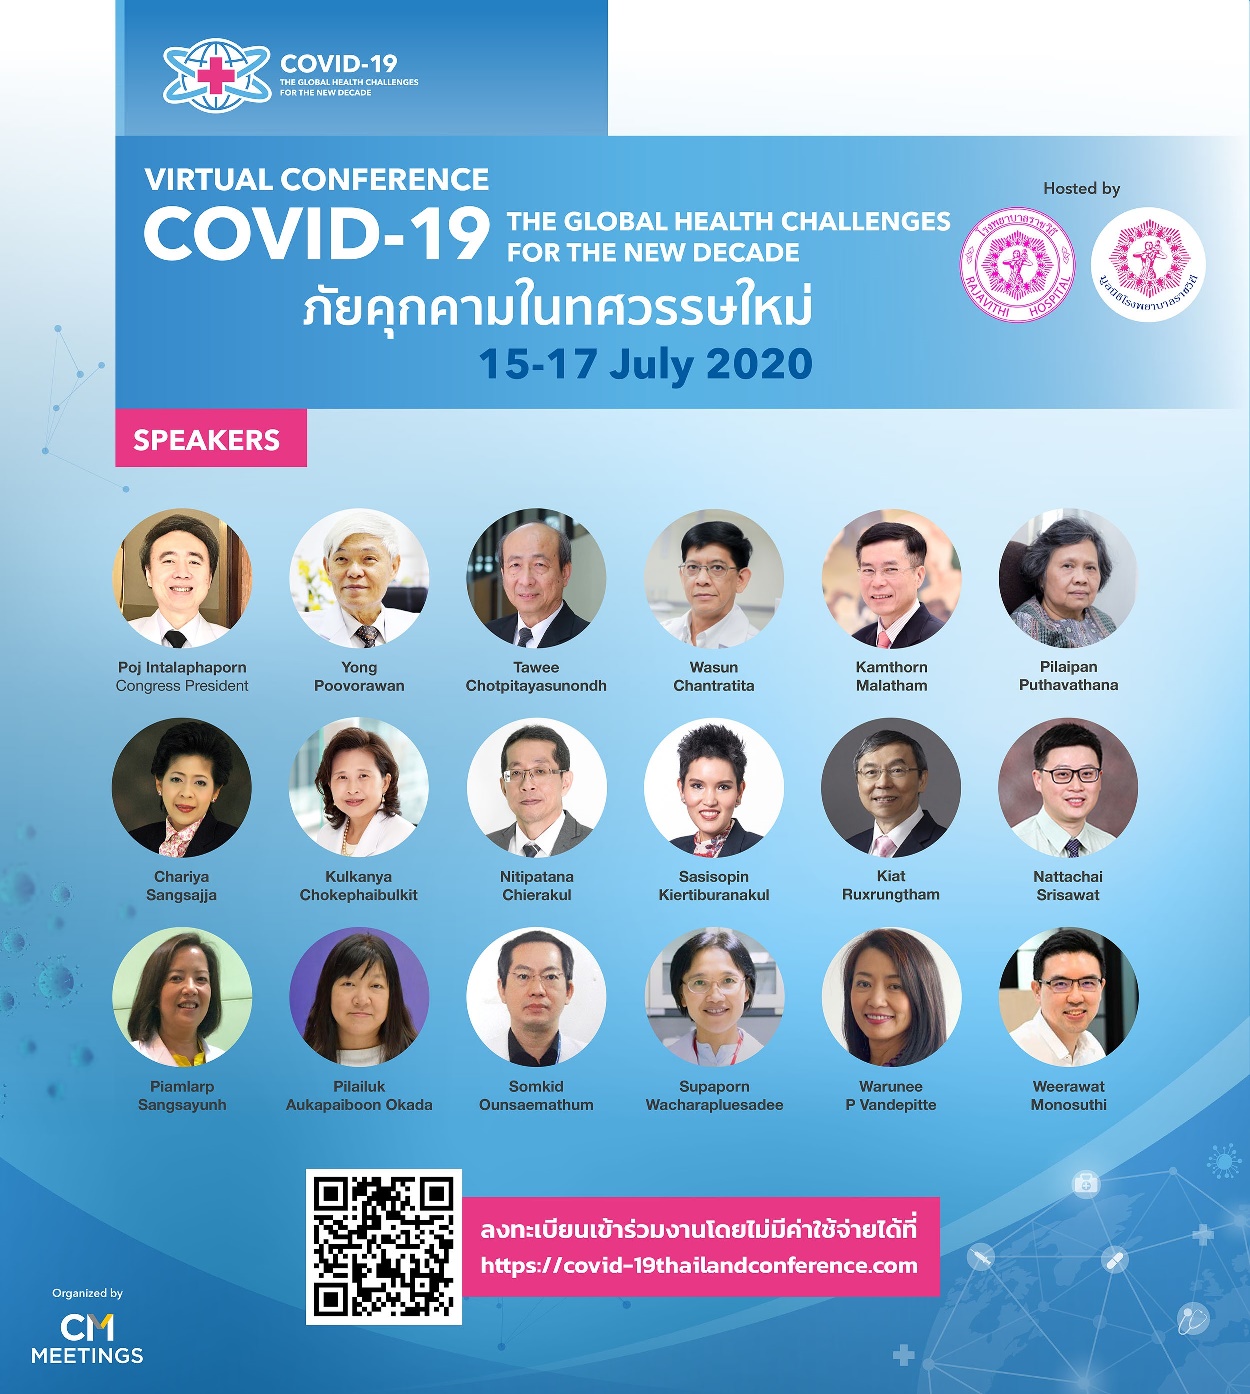 CMO จับมือ มูลนิธิโรงพยาบาลราชวิถี ภายใต้กรมการแพทย์ กระทรวงสาธารณสุข จัด Virtual Conference งานประชุมวิชาการนานาชาติ COVID-19